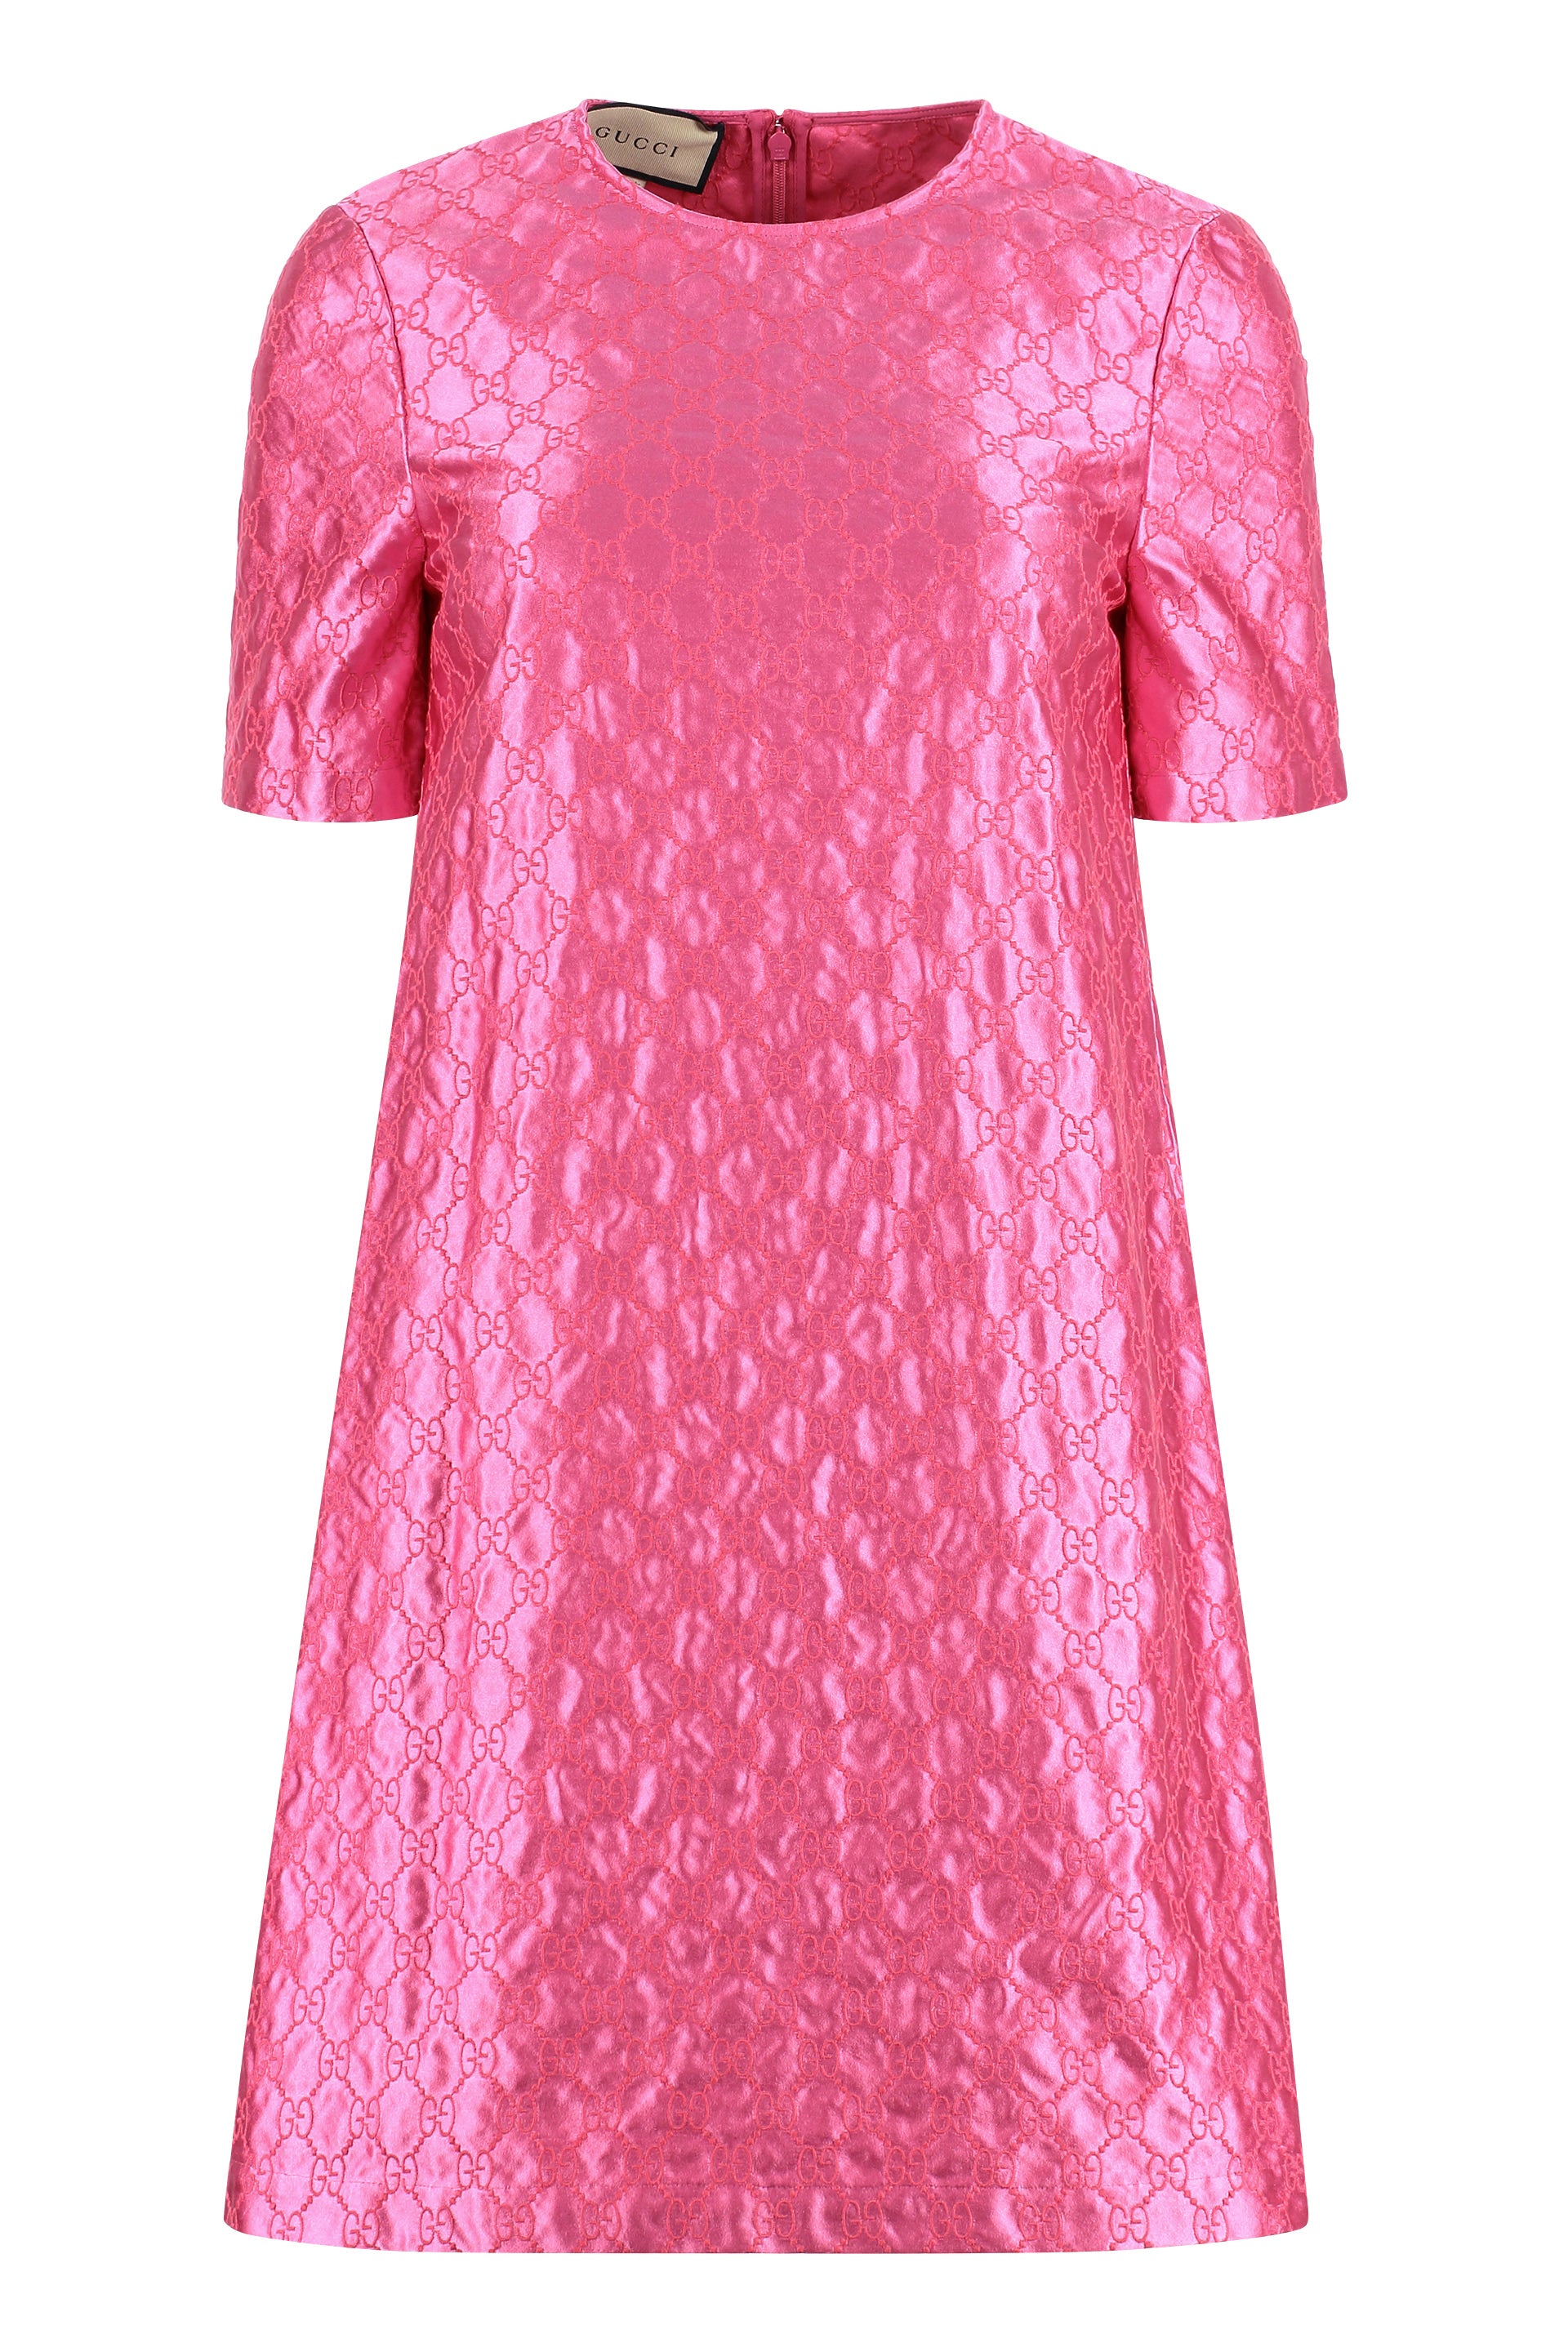 Gucci Dress Pink